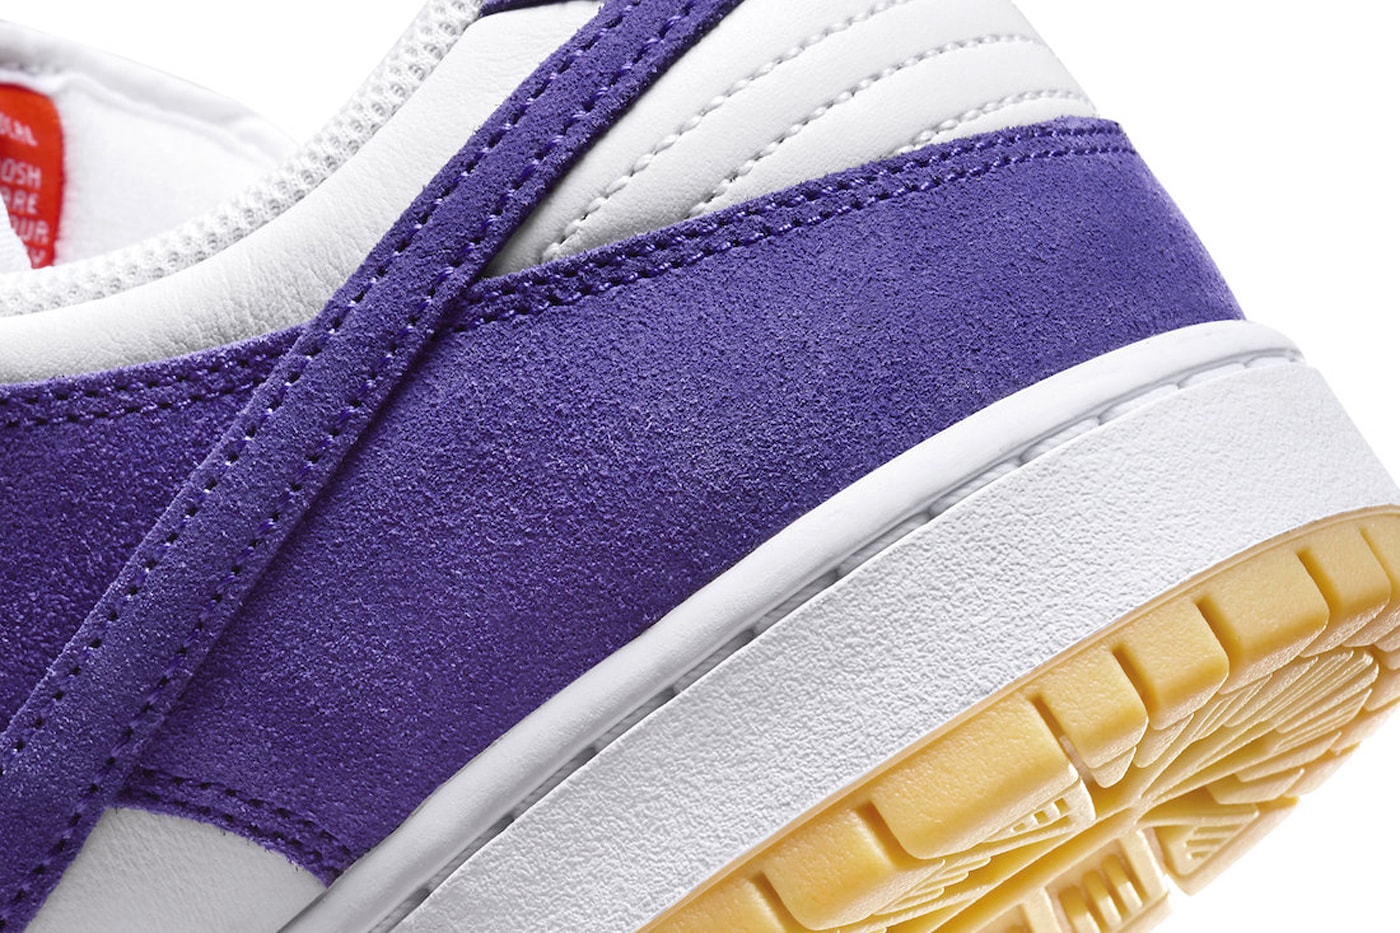 Lançamento Confirmado! Novo Nike Dunk Low Court Purple em 2022